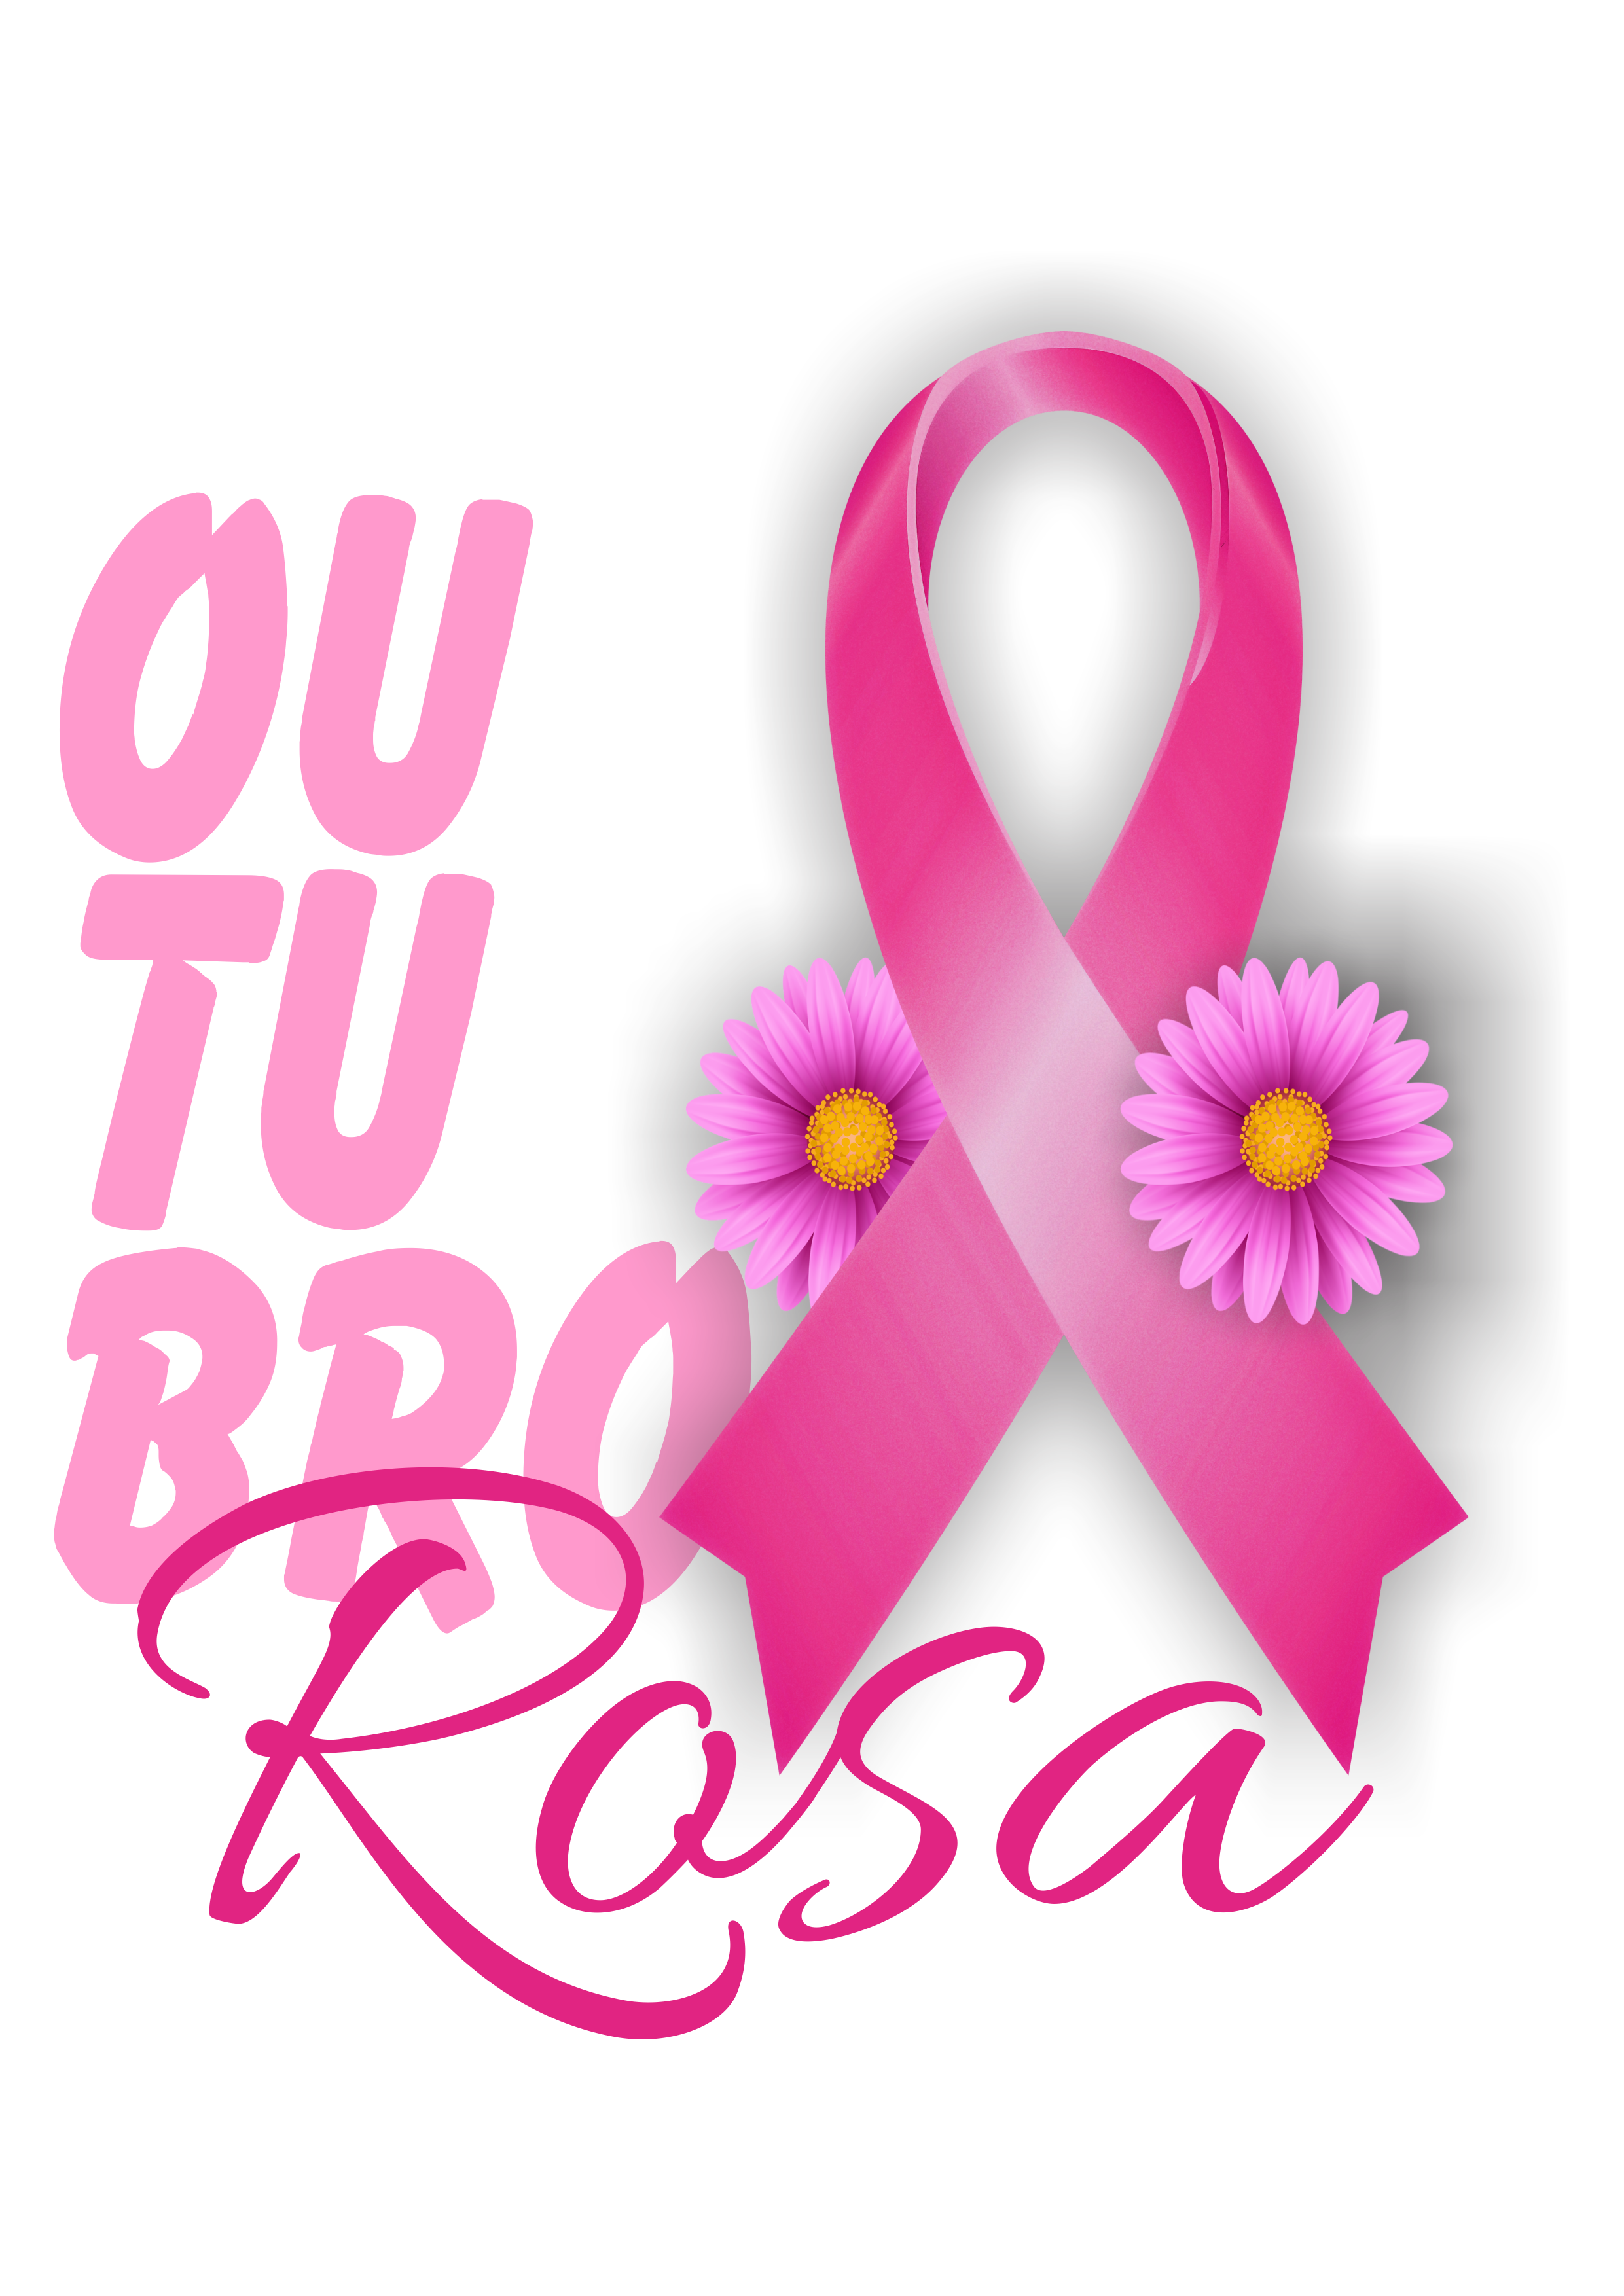 Outubro rosa mês de prevenção ao câncer de mama logo png